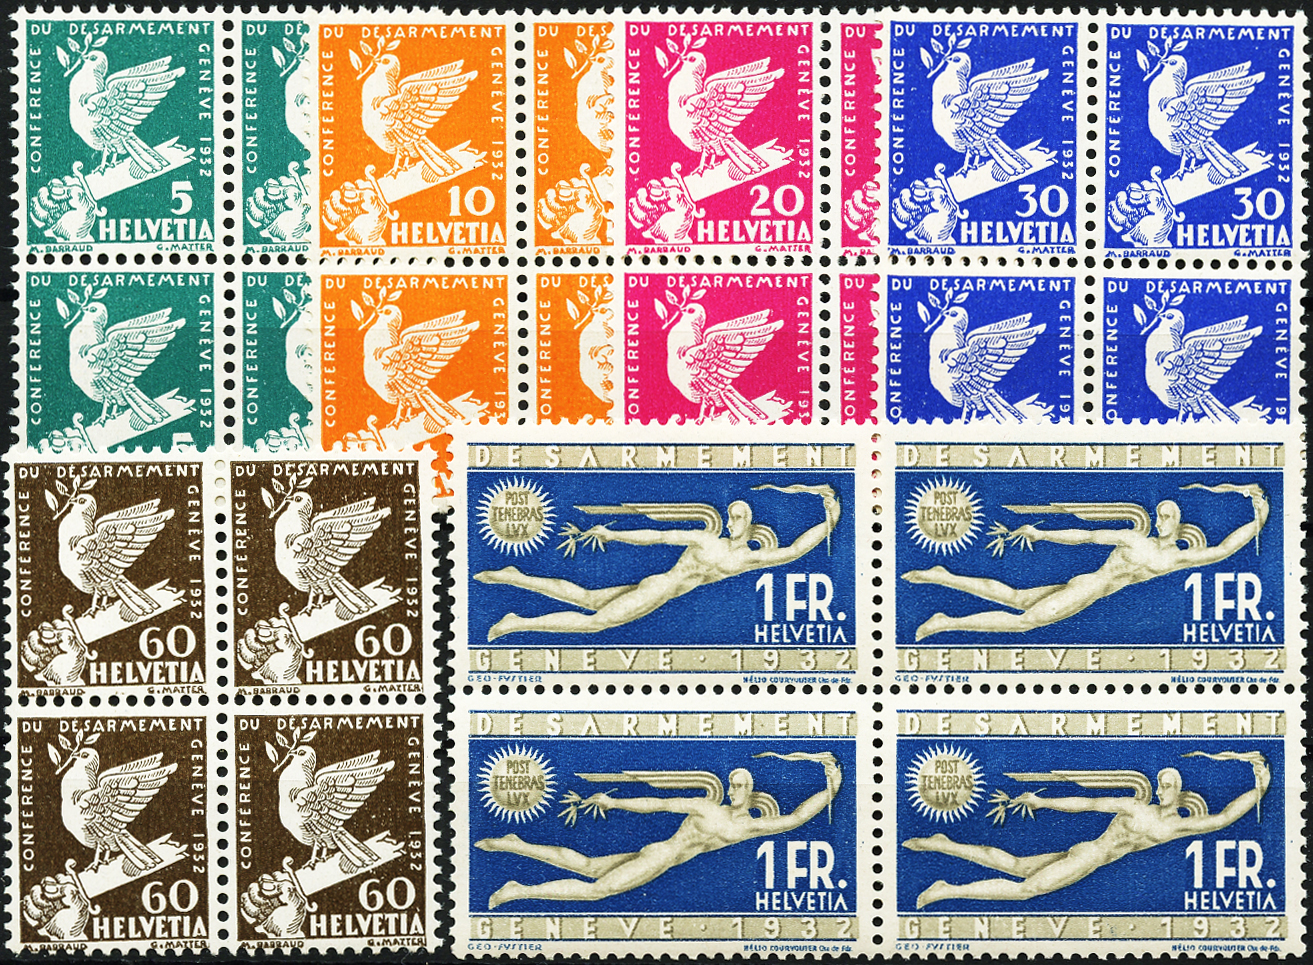 Bild-1: 185-190 - 1932, Gedenkausgabe zur Abrüstungskonferenz in Genf